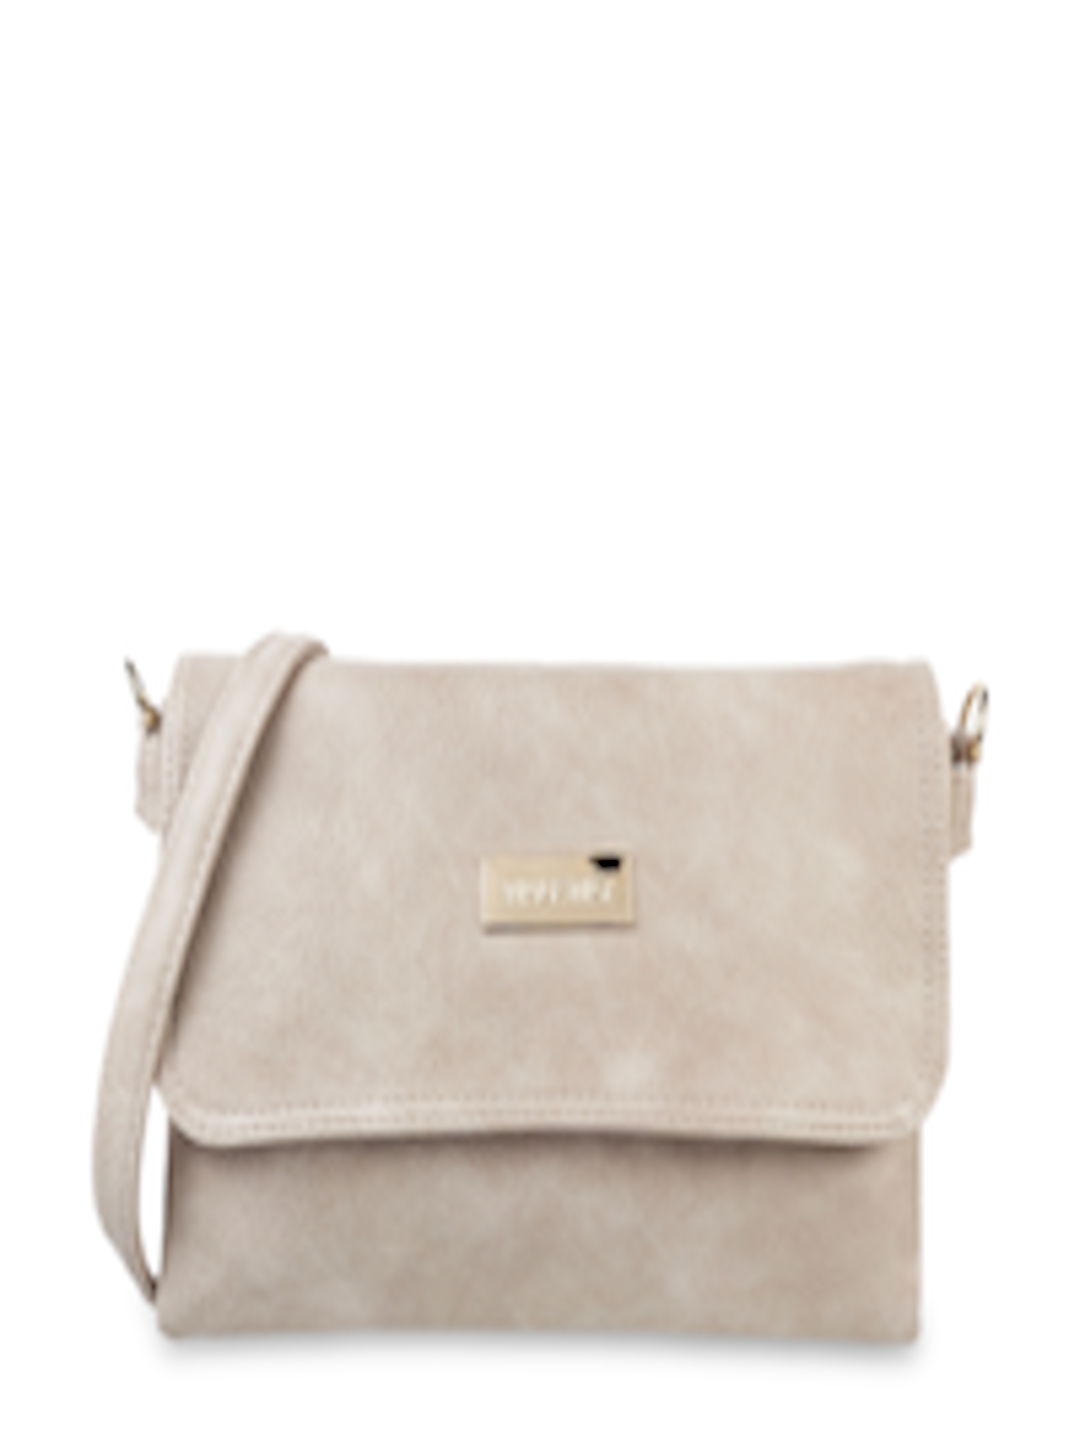 Buy WALKWAY By Metro Beige Solid Sling Bag - Handbags for Women ...